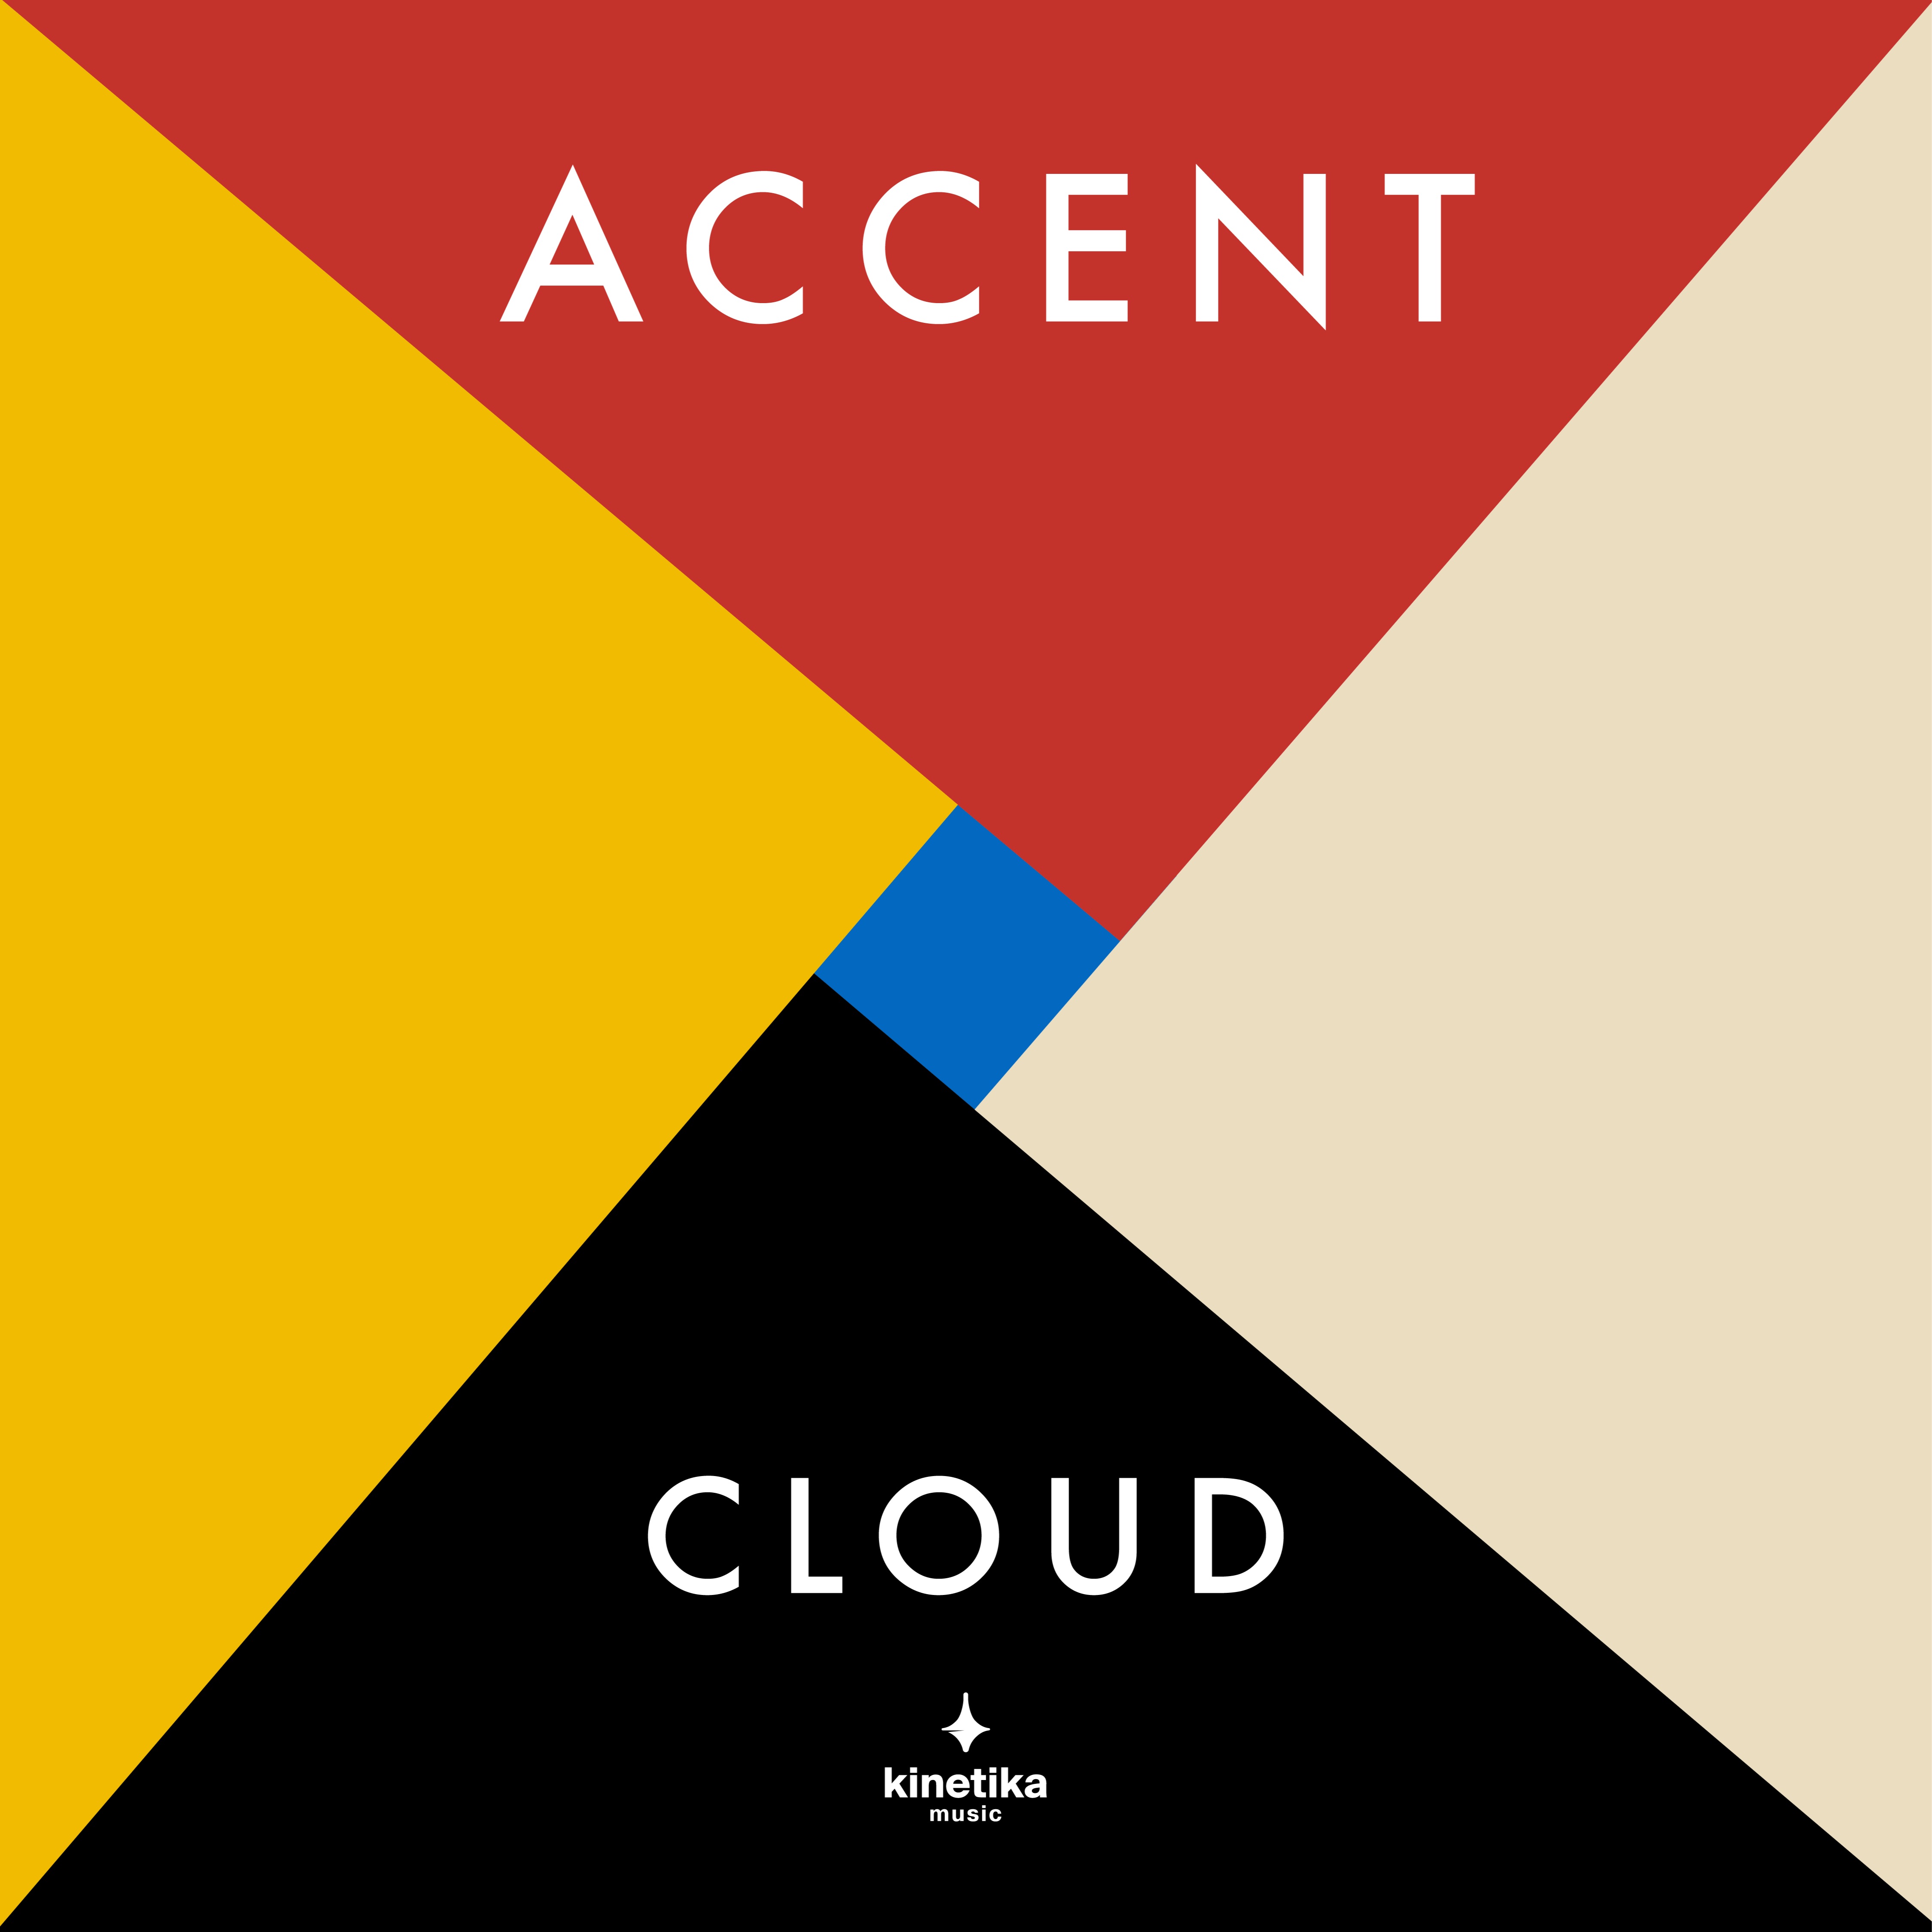 Lejupielādēt 01 Accent - Cloud (Original Mix) [Kinetika Music]